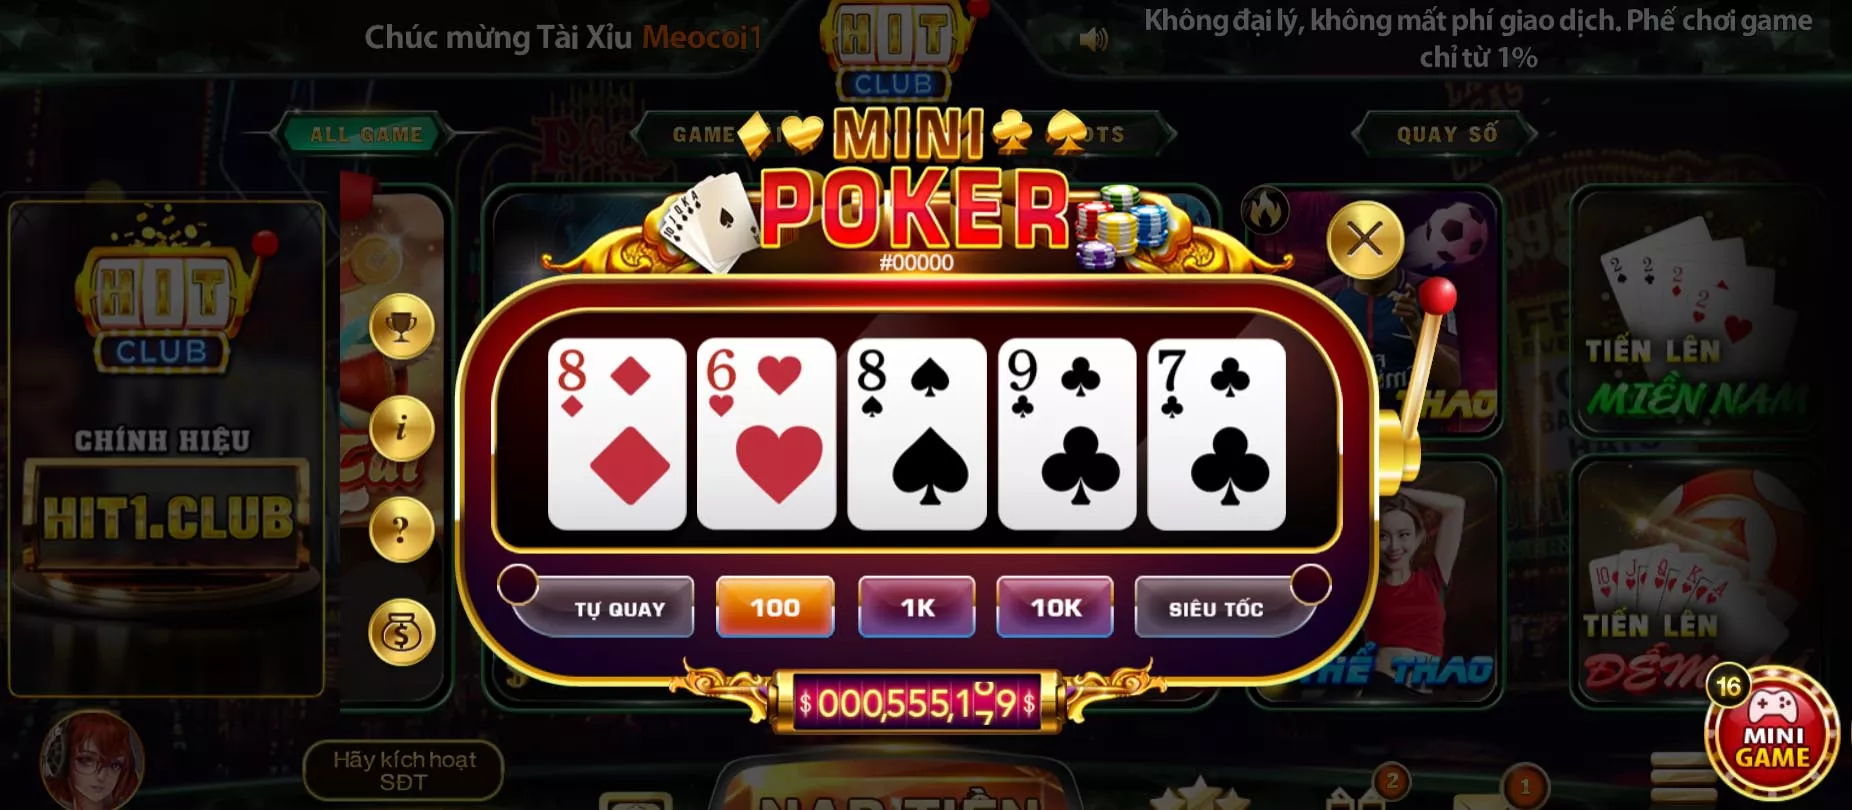 Mini Poker là mini game được ưa chuộng nhất Hit Club